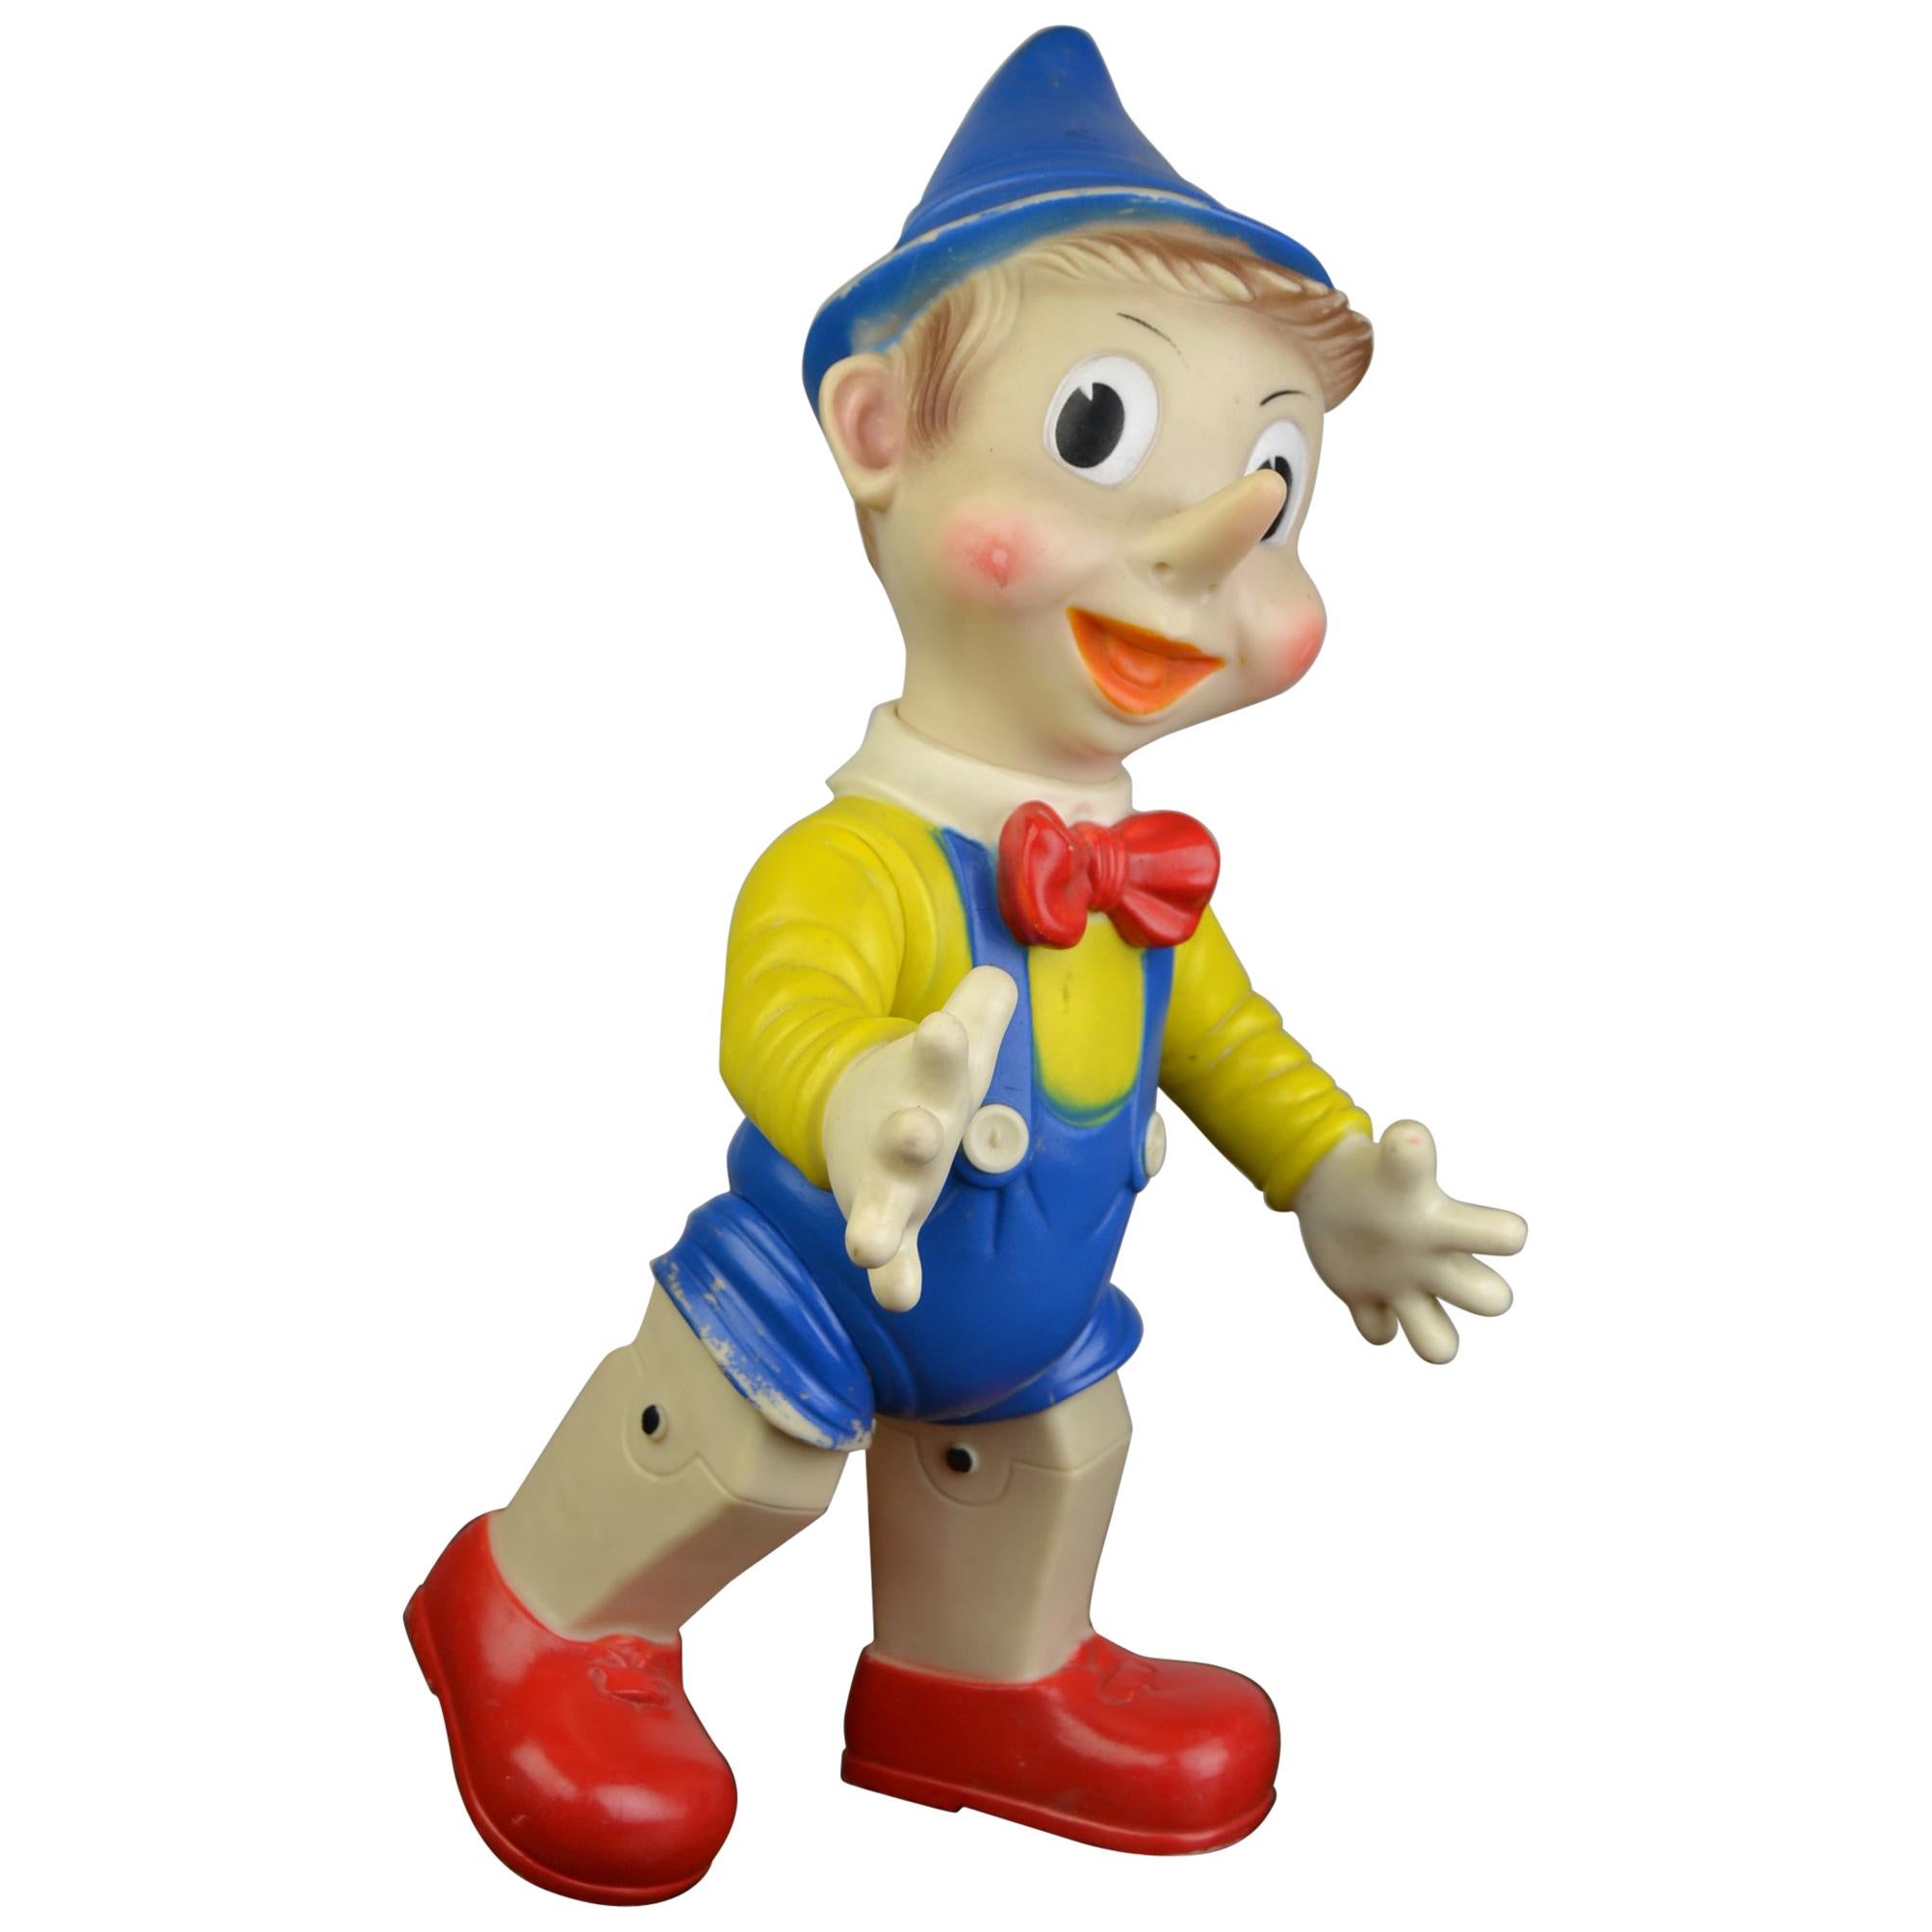 Ancien jouet vintage squeaky toy 35cm Ledraplastic Ledraplastic pouet âne Pinocchio Disney 